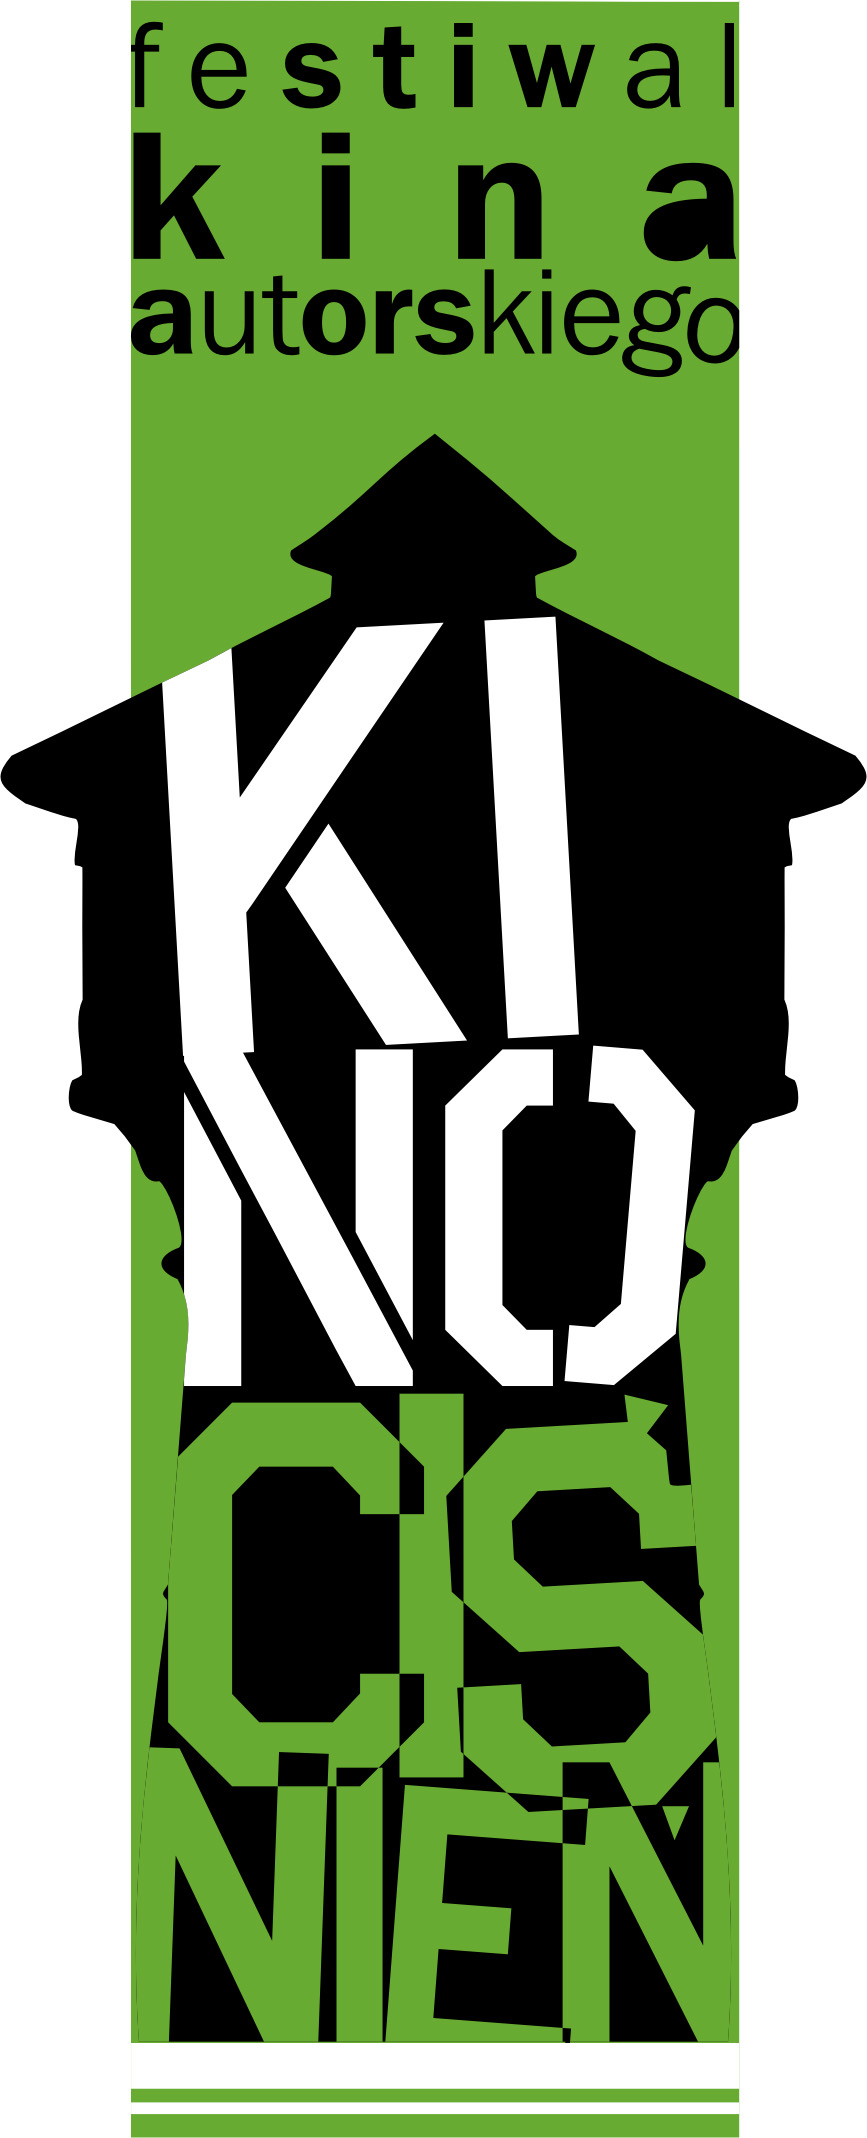 logo_kino_cinie_.jpg